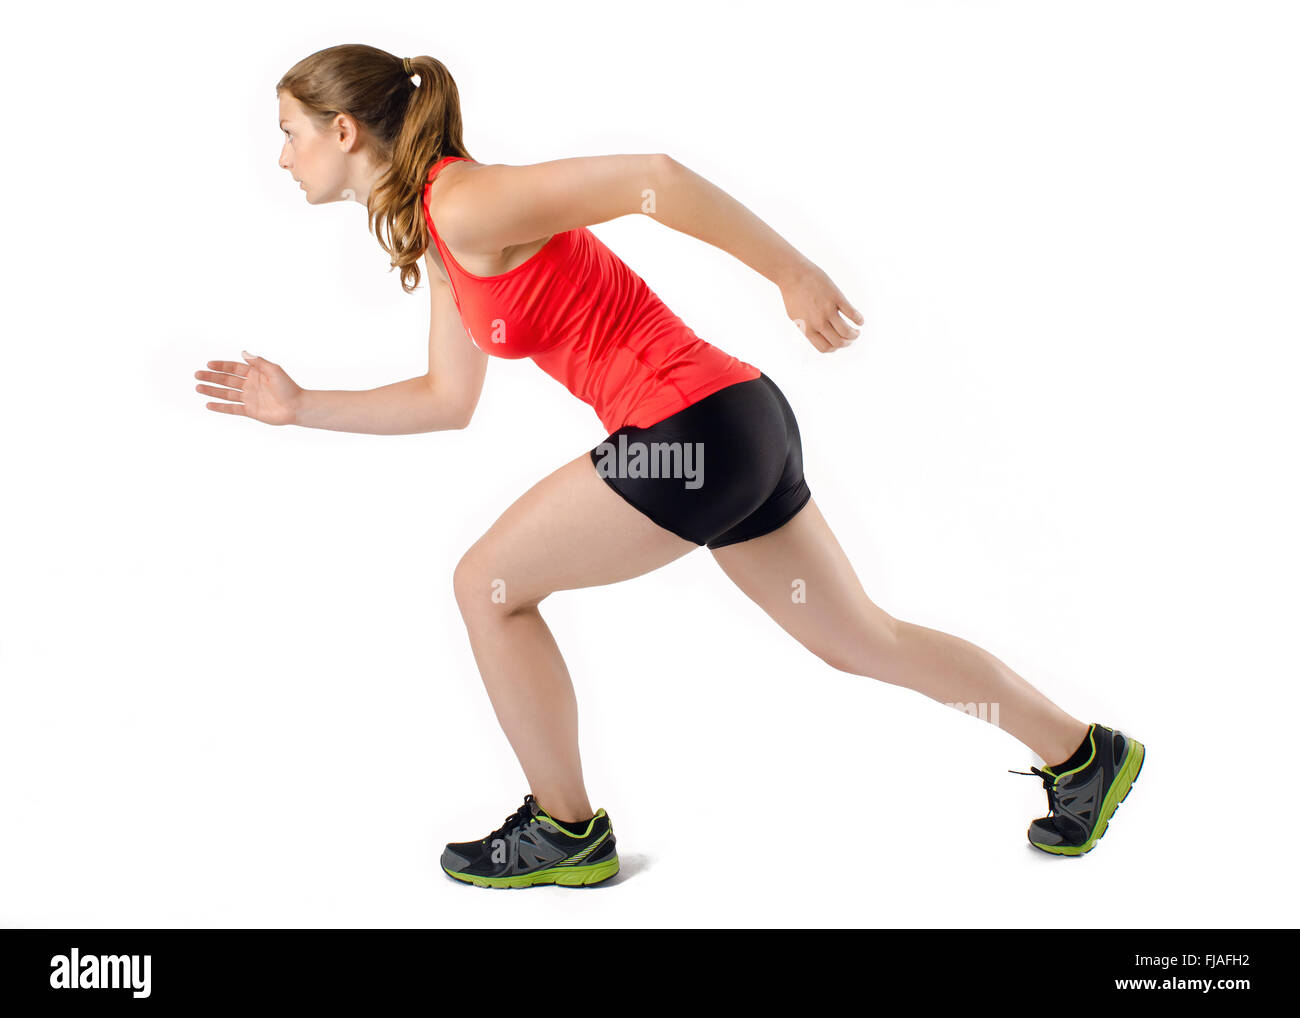 Young woman running sports athlétiques en profil. Isolé sur fond blanc. Banque D'Images